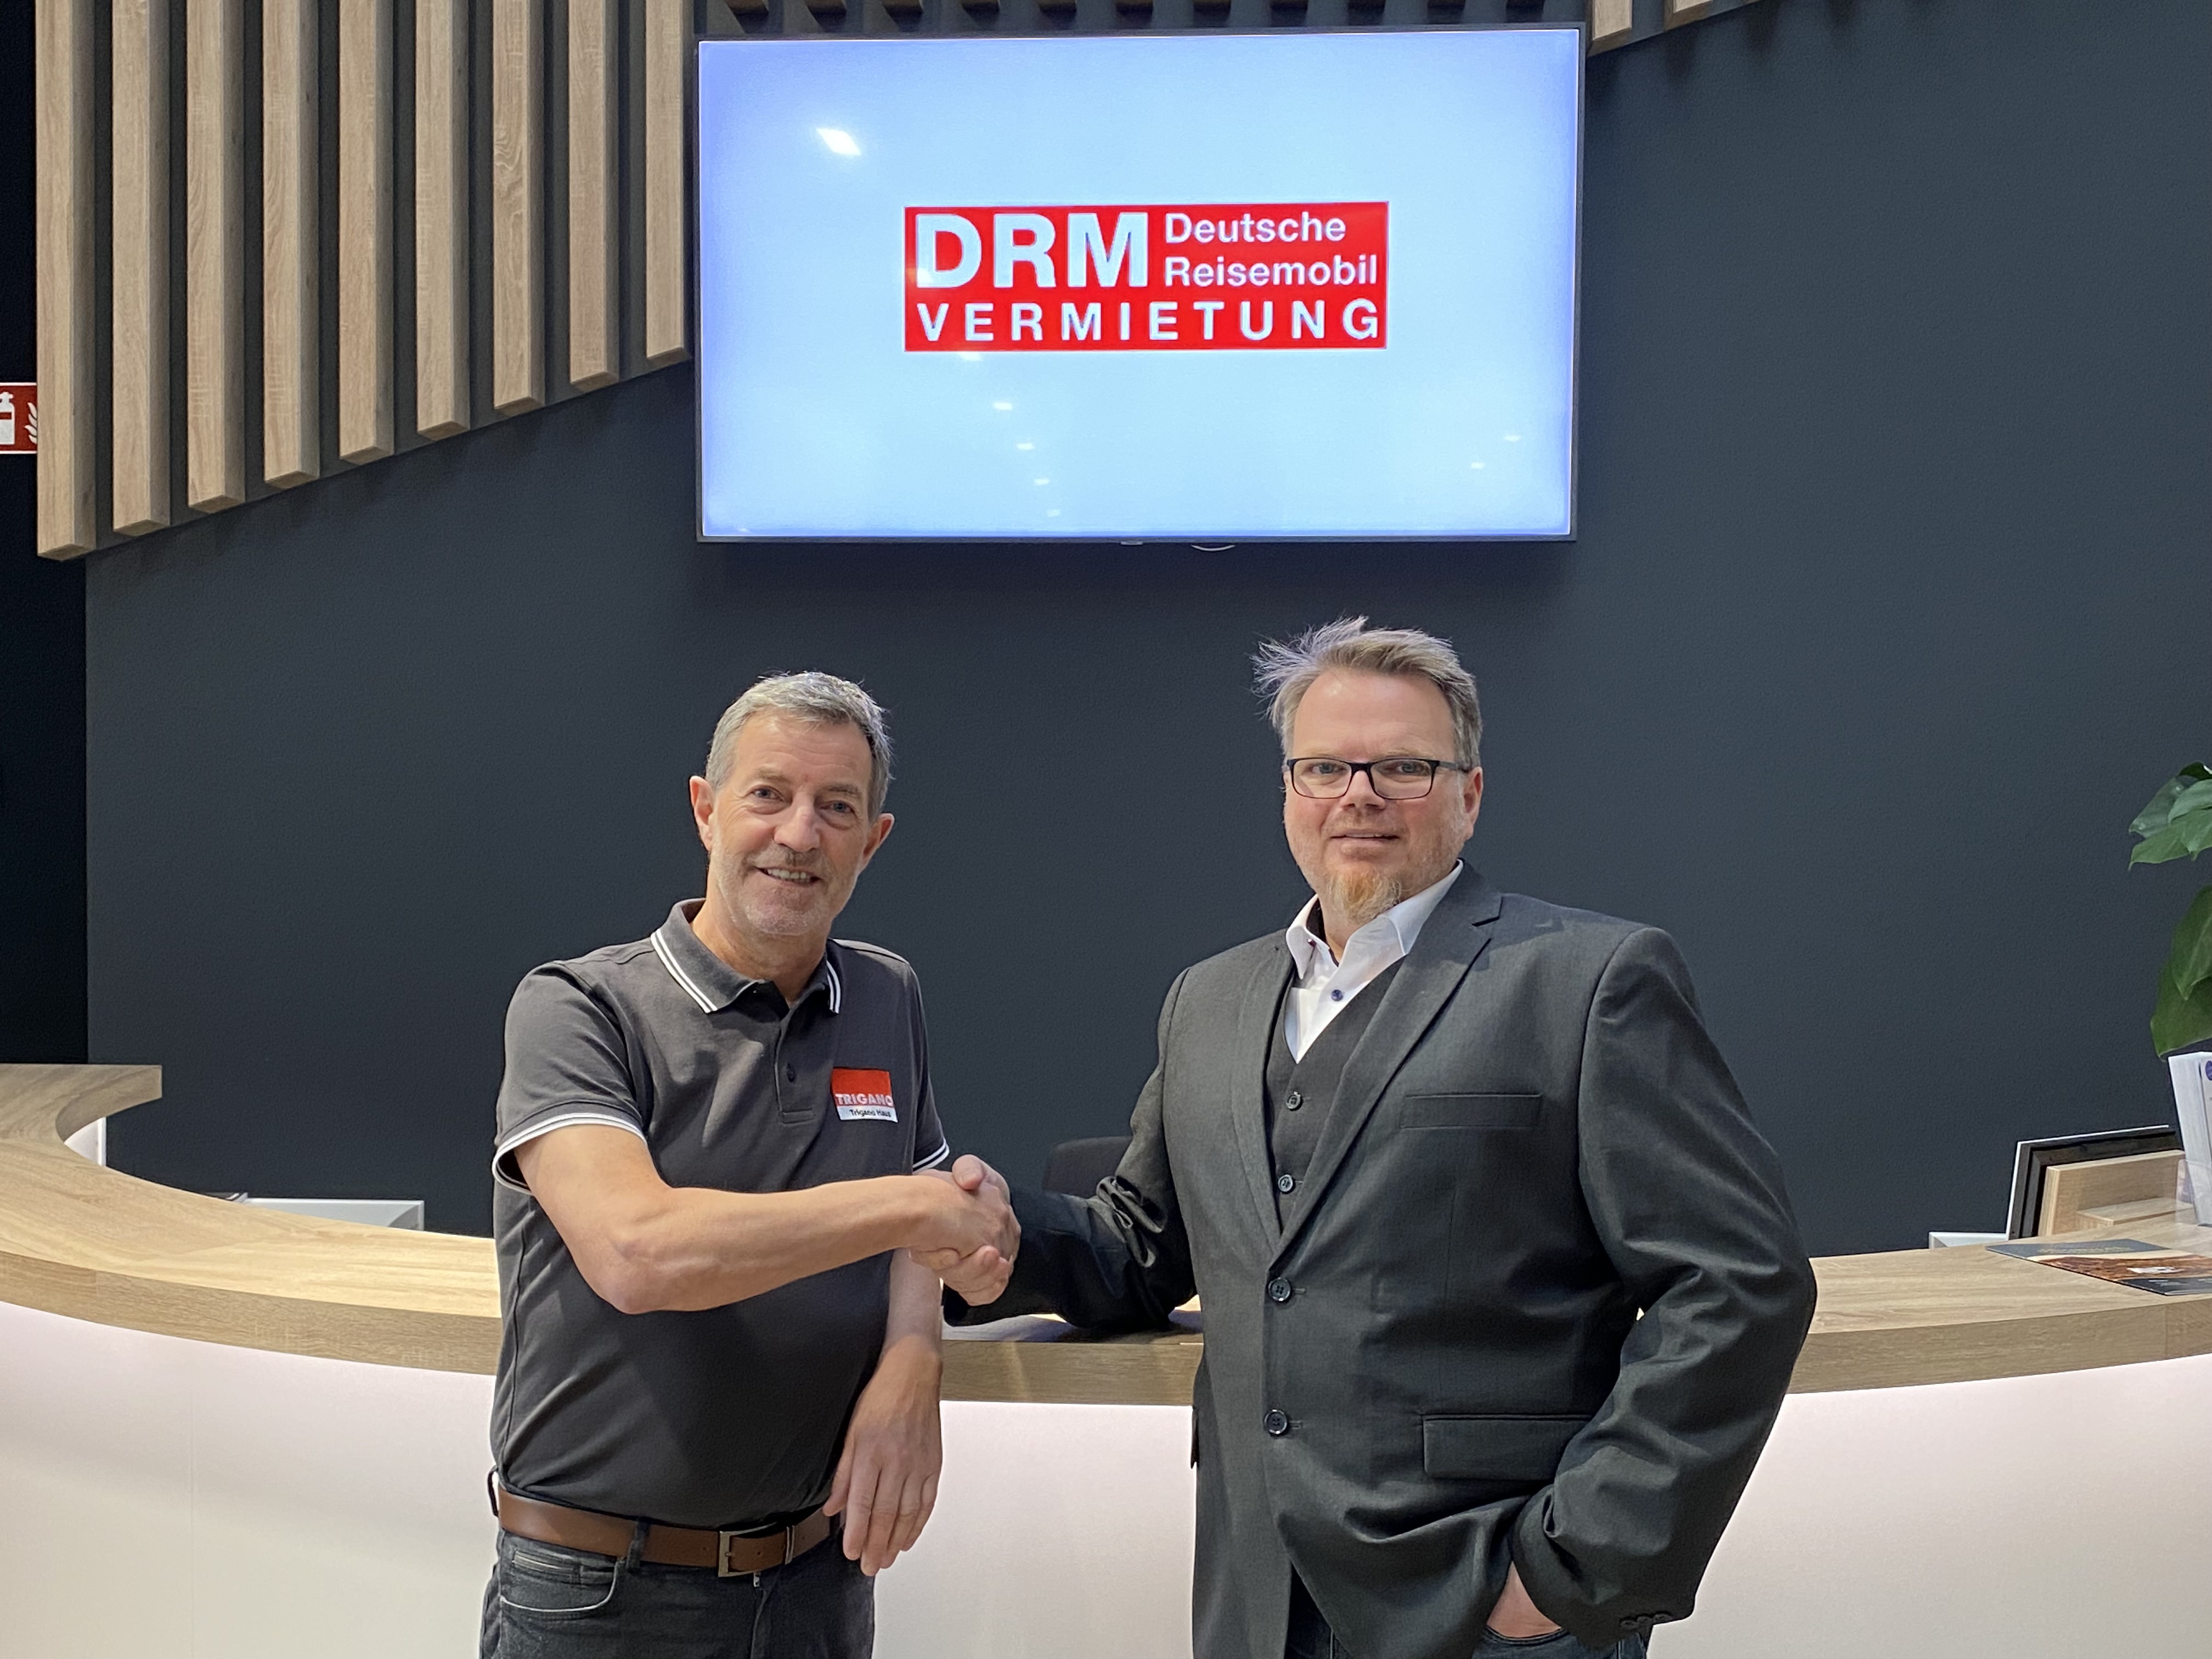 Dr. Holger Siebert begrüßt Ralf Holstein als neuen General Manager der DRM